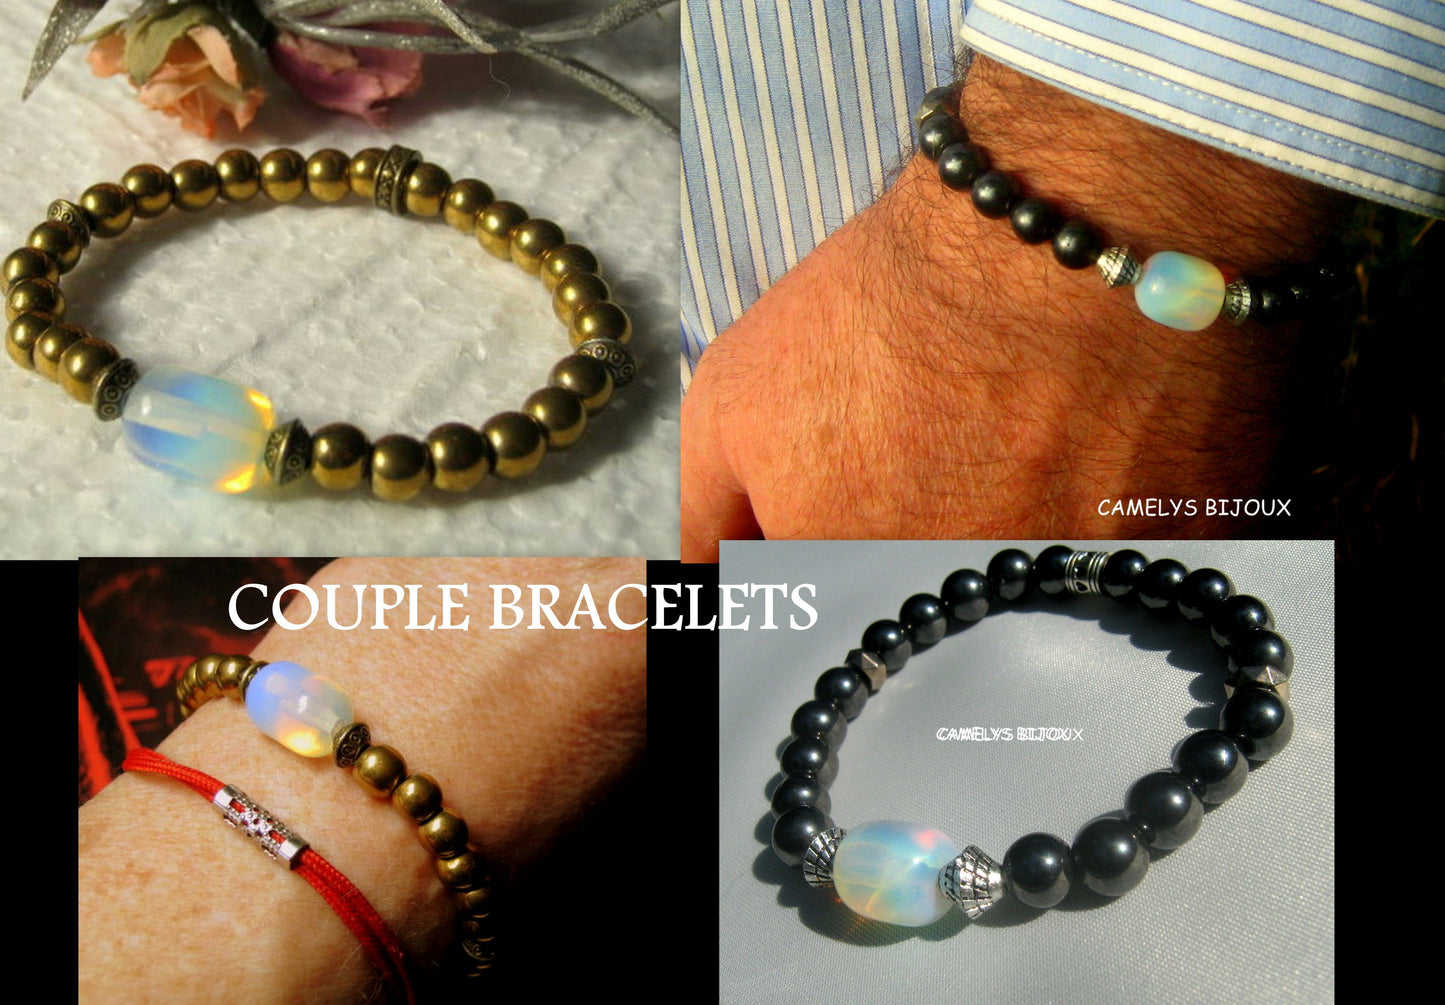 OPAL stone Hematite Bracelet Moonstone, Healing stone, Handmade bracelet men women couple gift